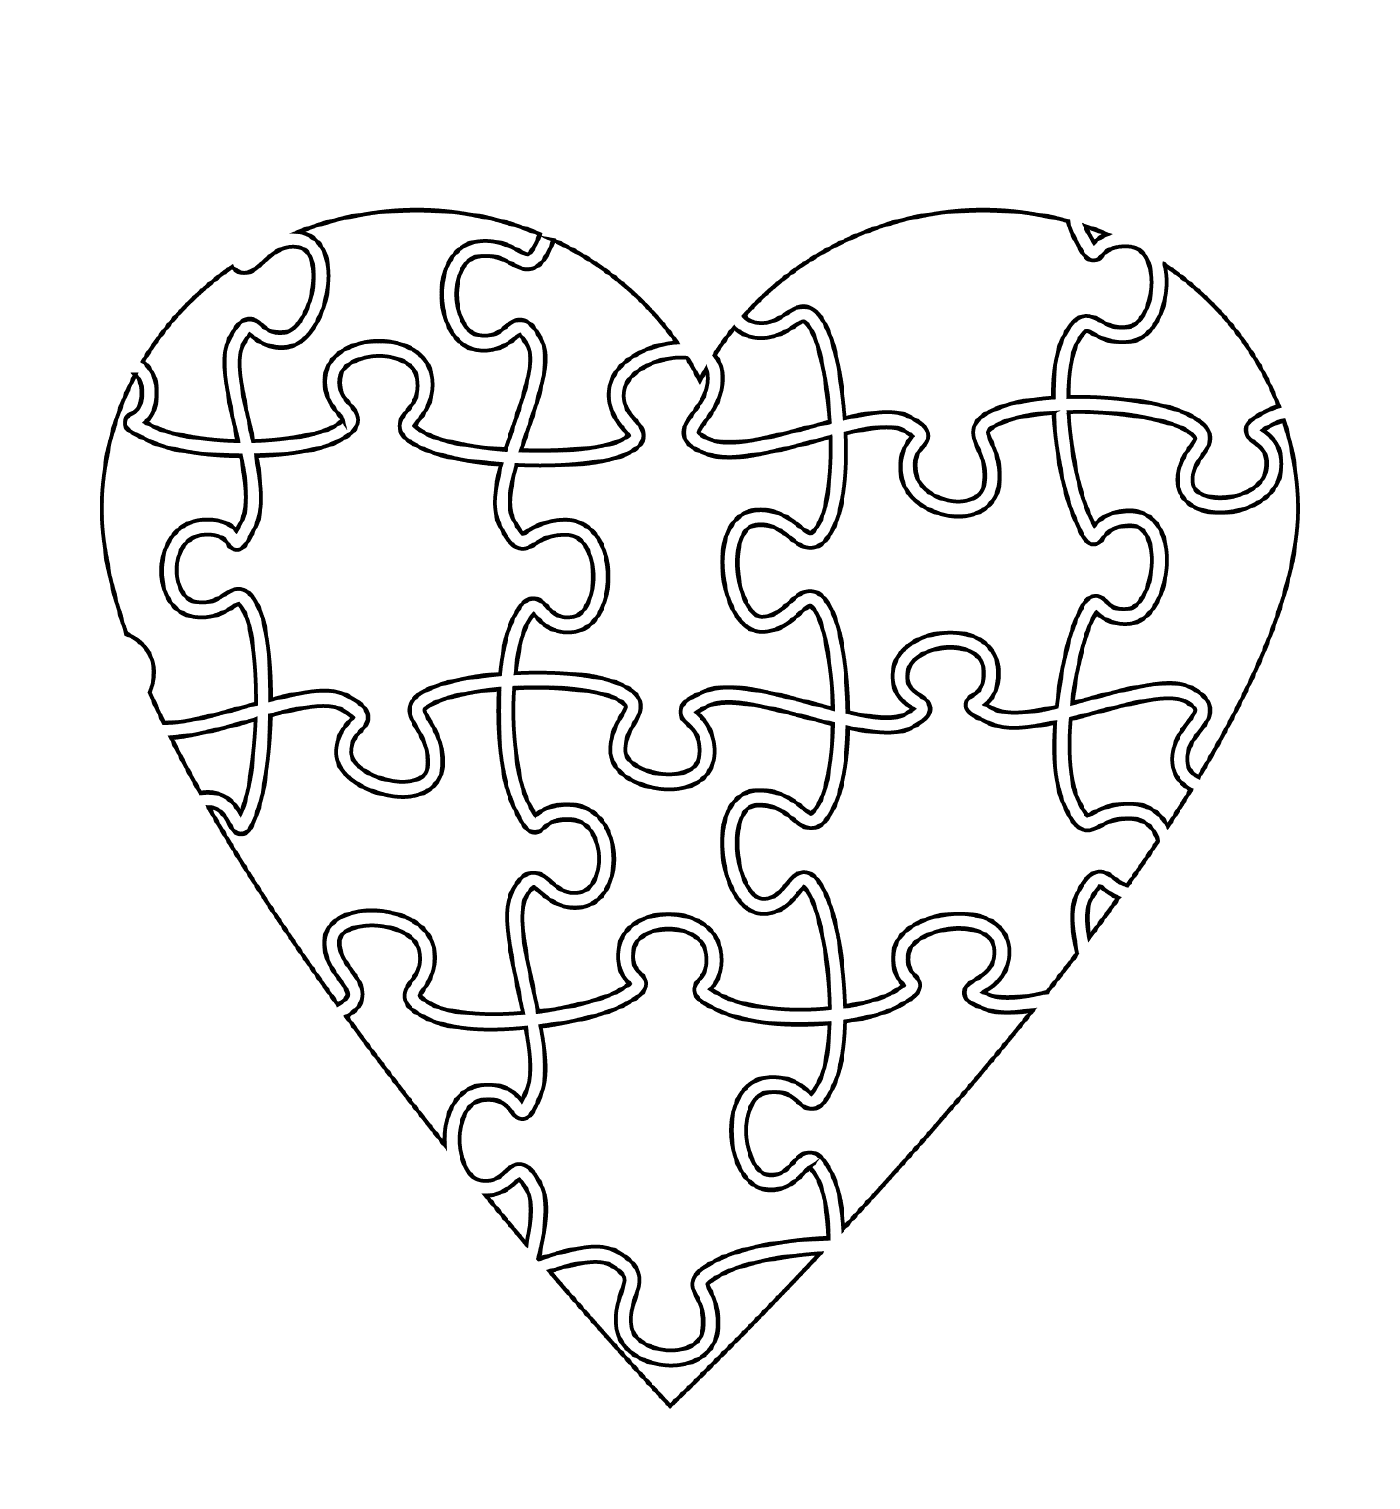  Coração na forma de um quebra-cabeça encantador 